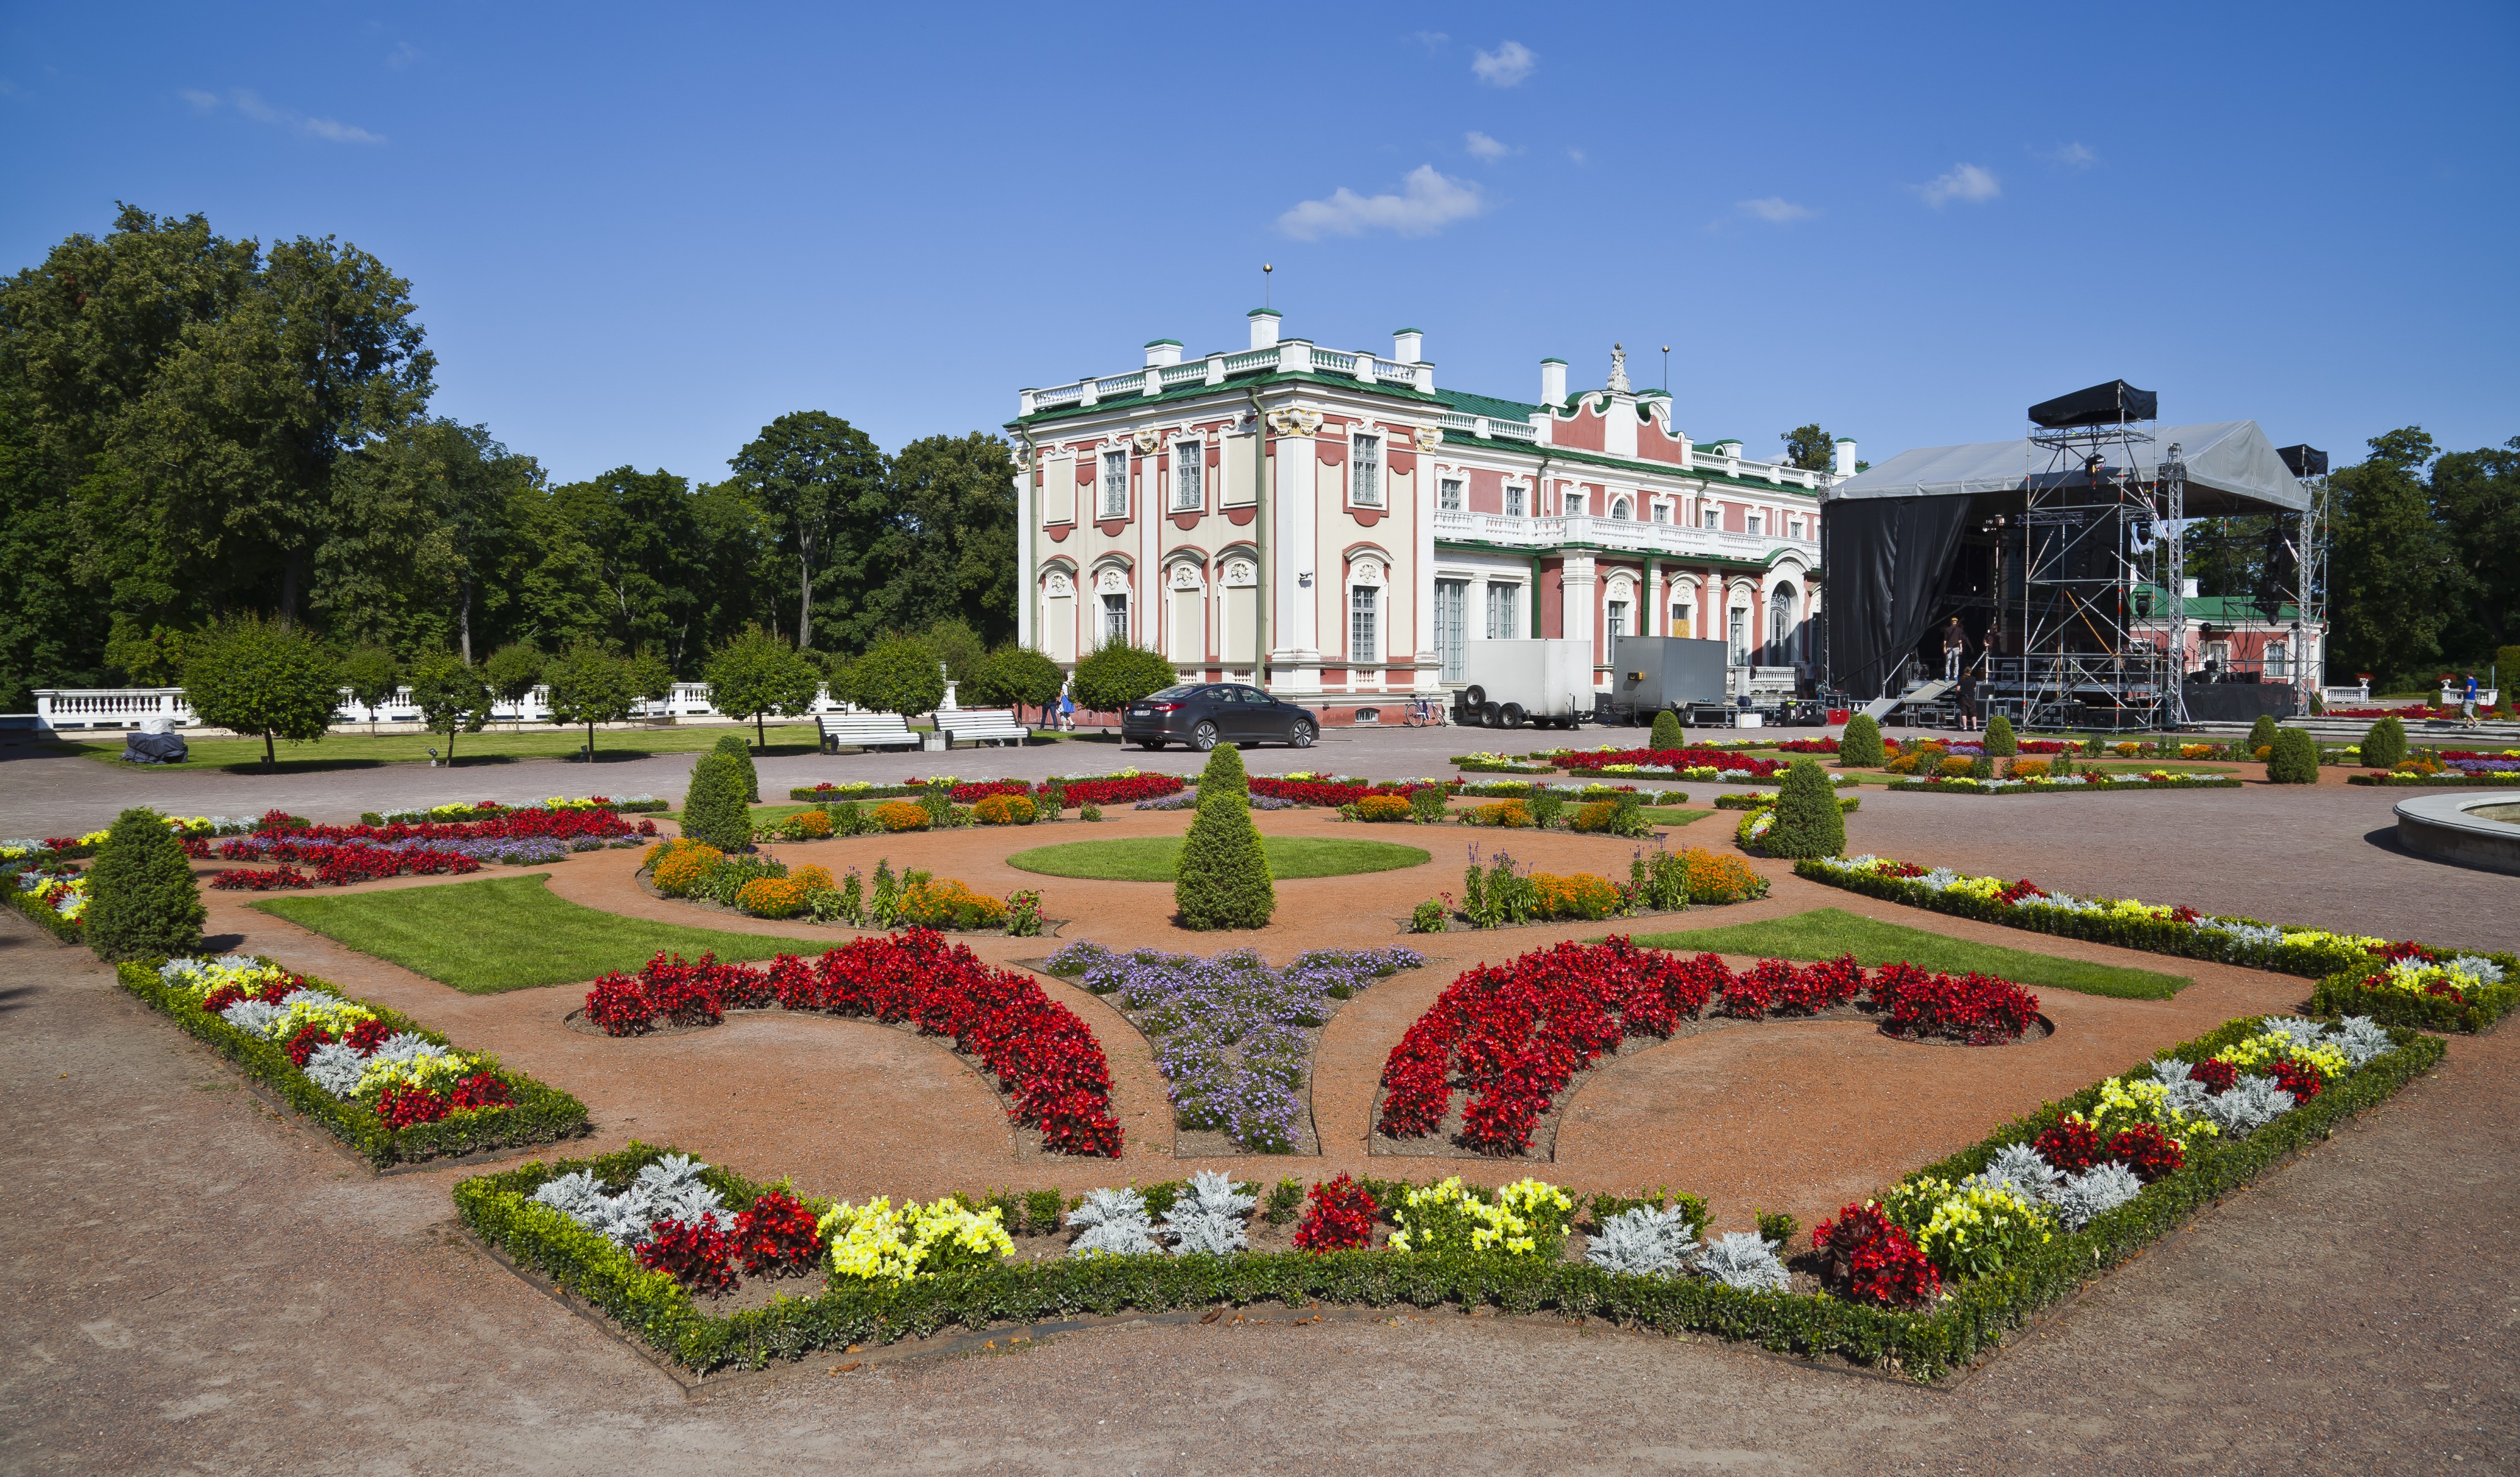 Palacio de Kadriorg, Tallinn, Estonia, 2012-08-12, DD 06